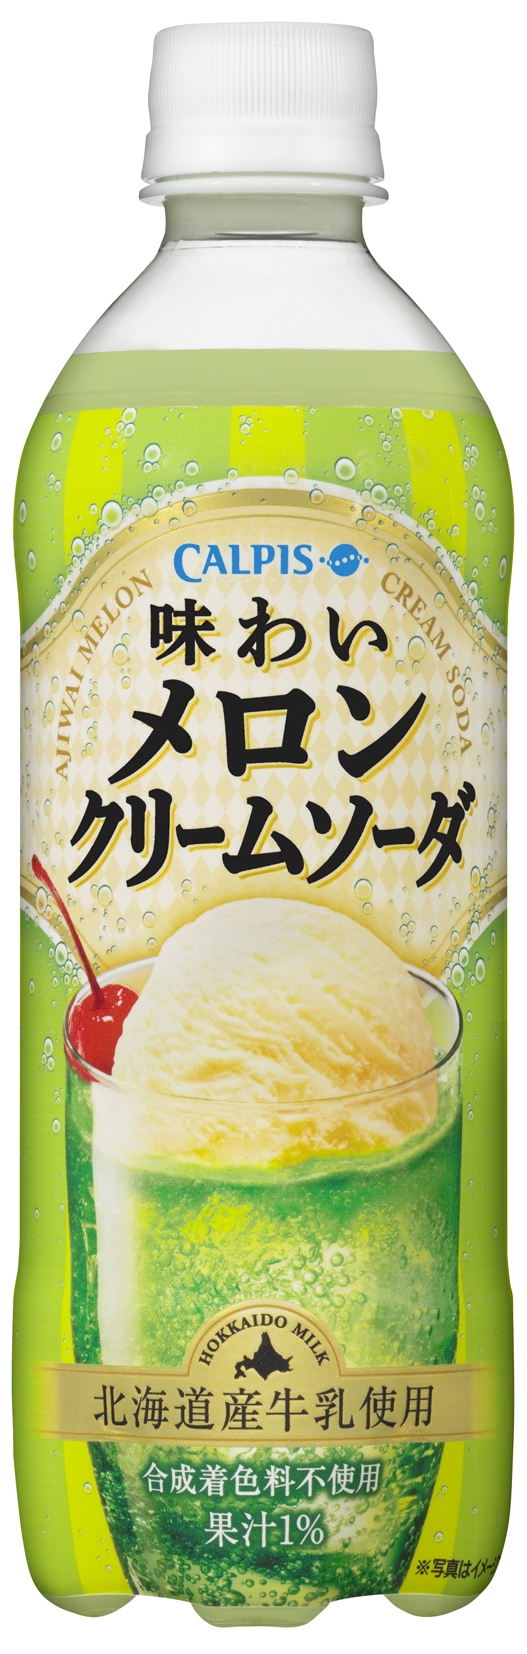 乳性飲料に強いカルピス社から 品質にこだわった メロンクリームソーダ をご提案 味わいメロンクリームソーダ 新発売 カルピス株式会社のプレスリリース